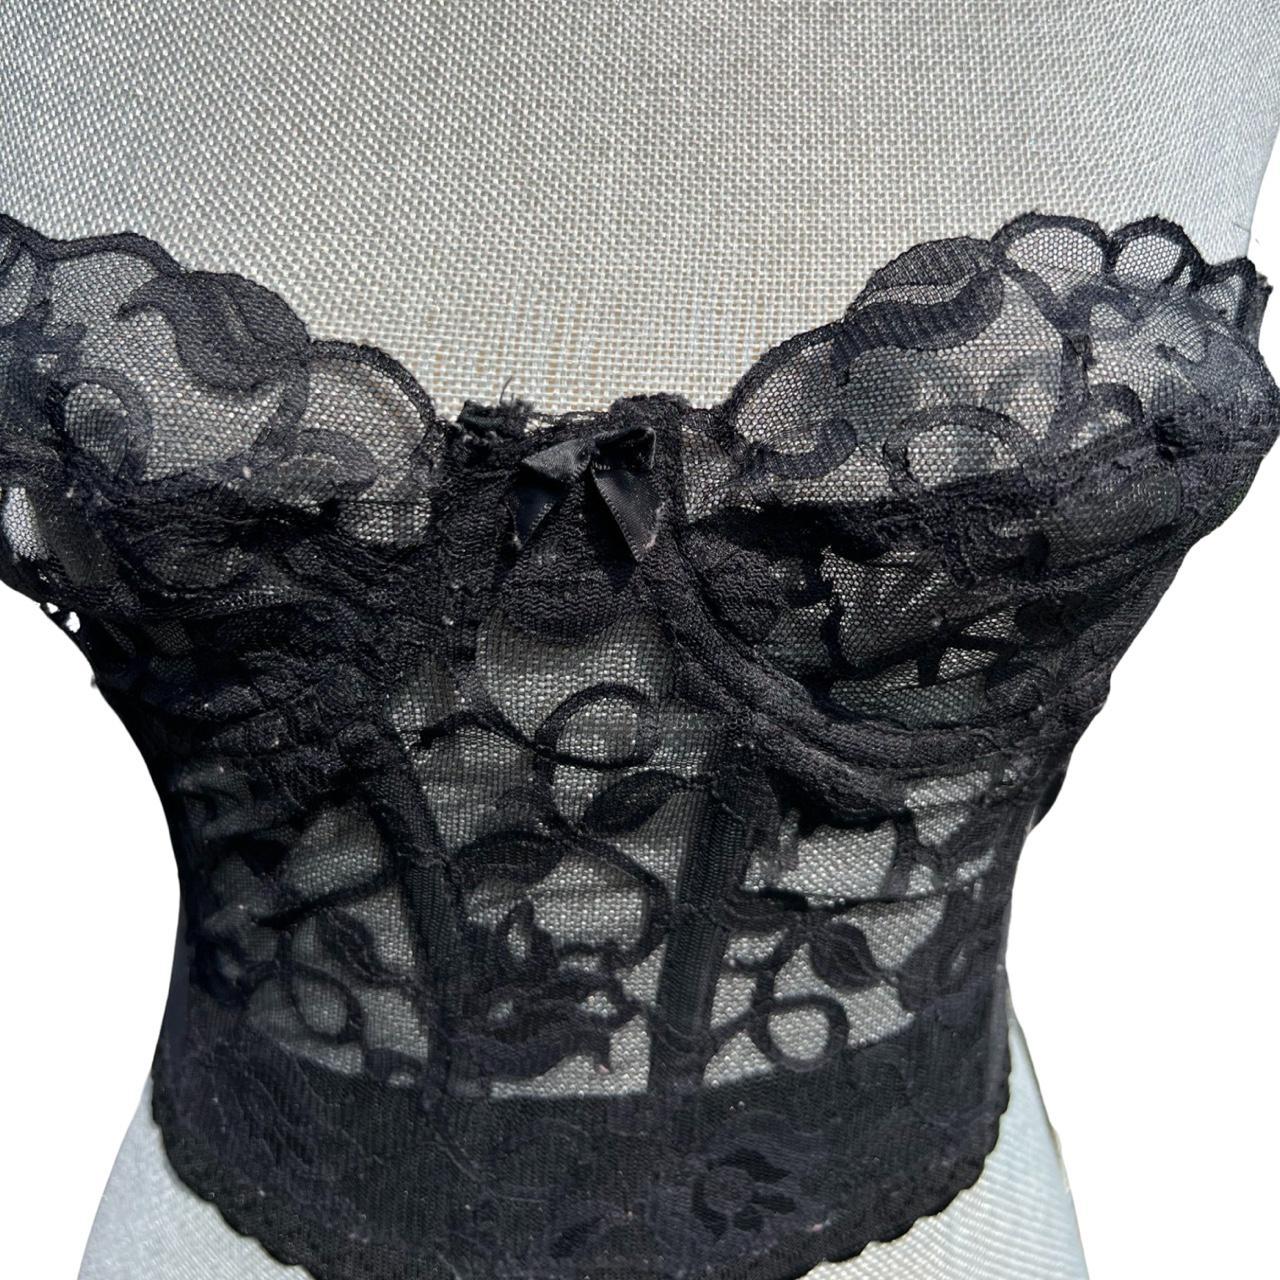 VICTORIA SECRET black floral corset size 32B never - Depop